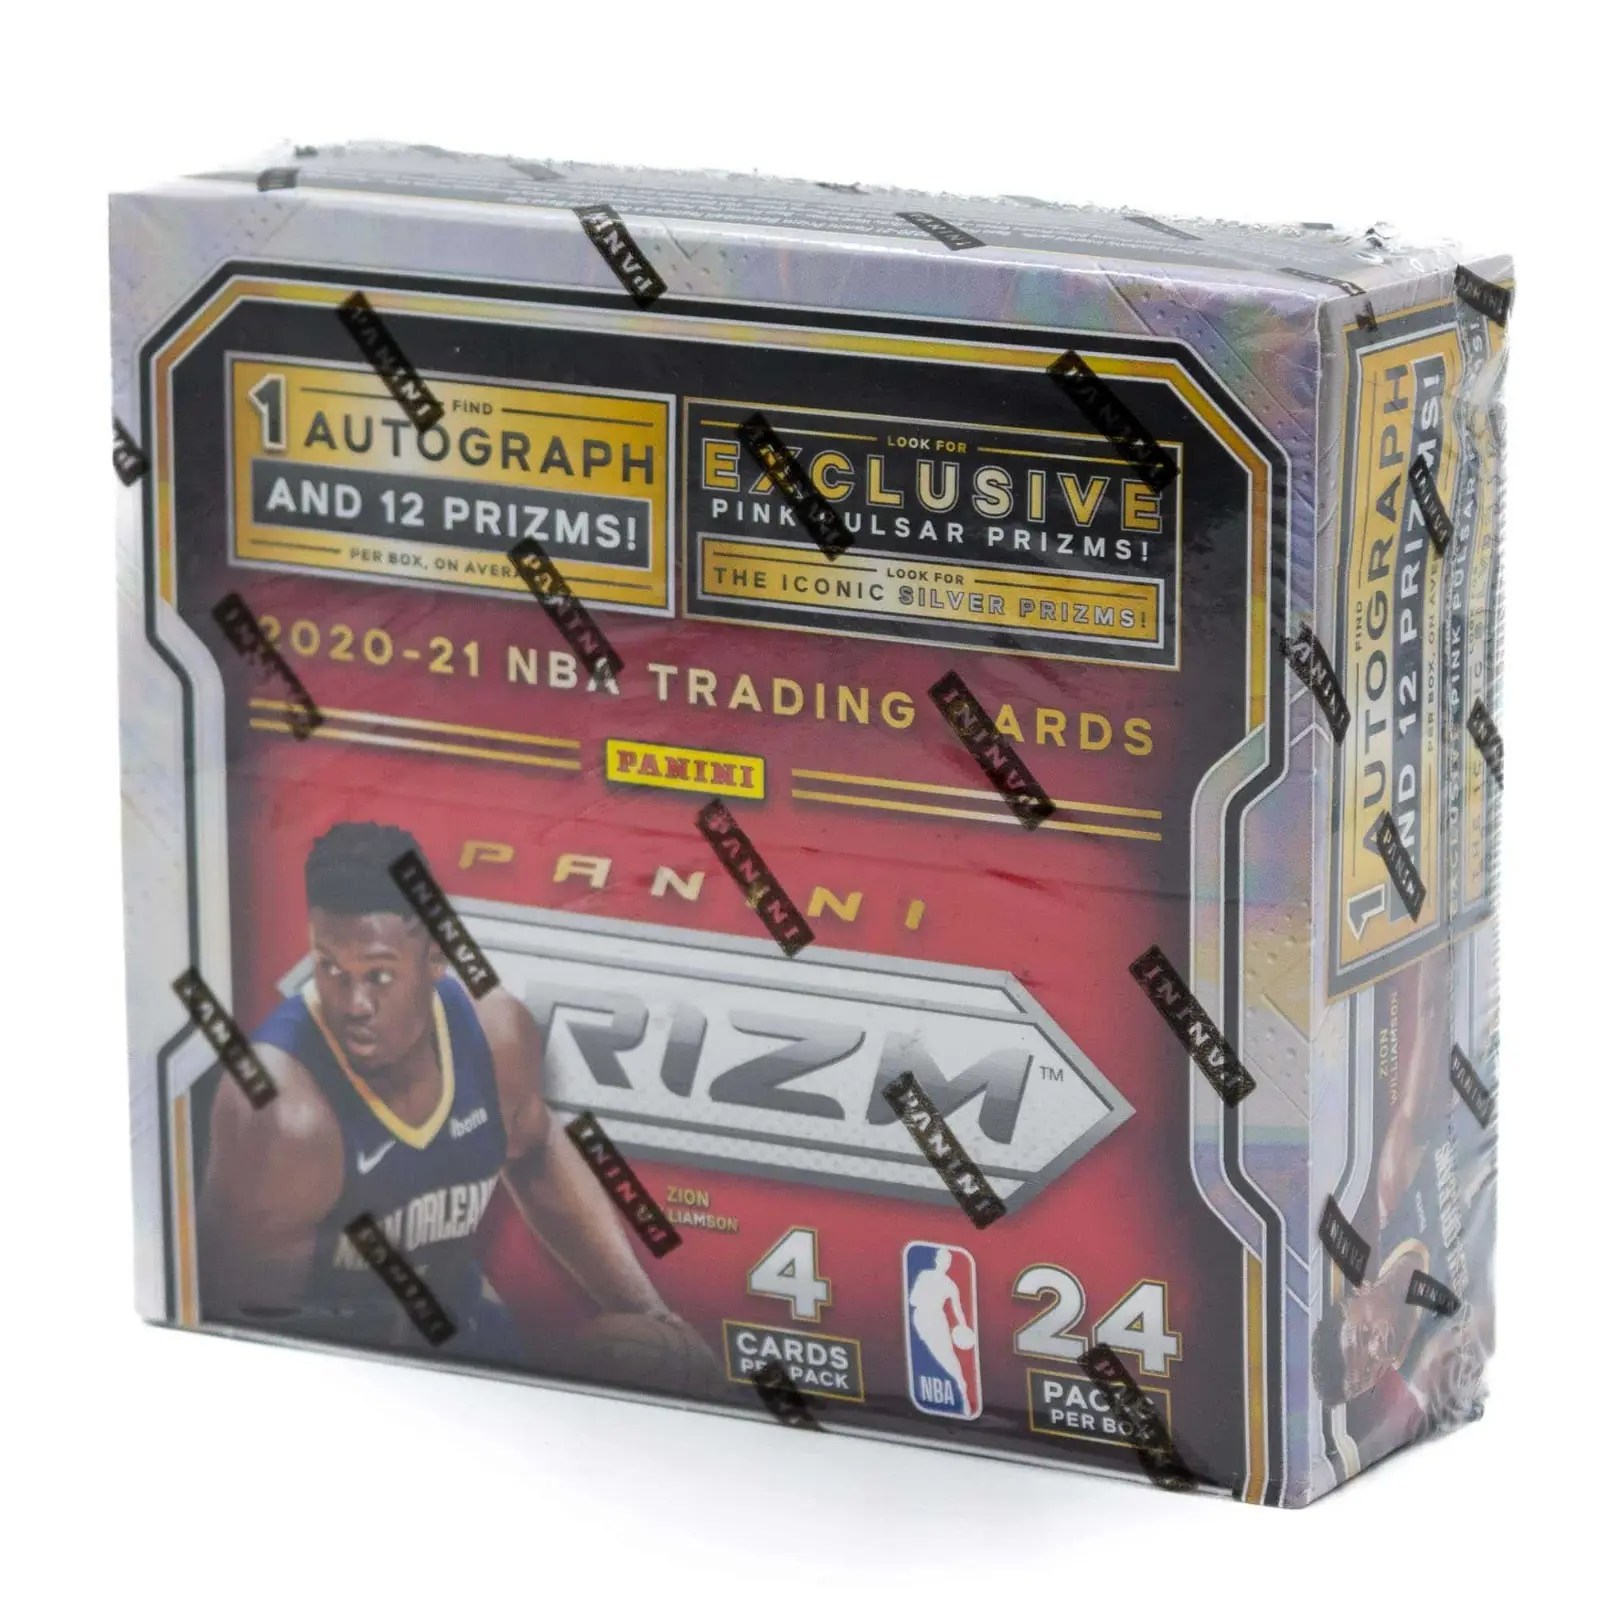 2020-21 Panini basketbol 24 paket perakende kutusu ticaret kartları iskambil kartları tanınmış abd kökenli çok satan